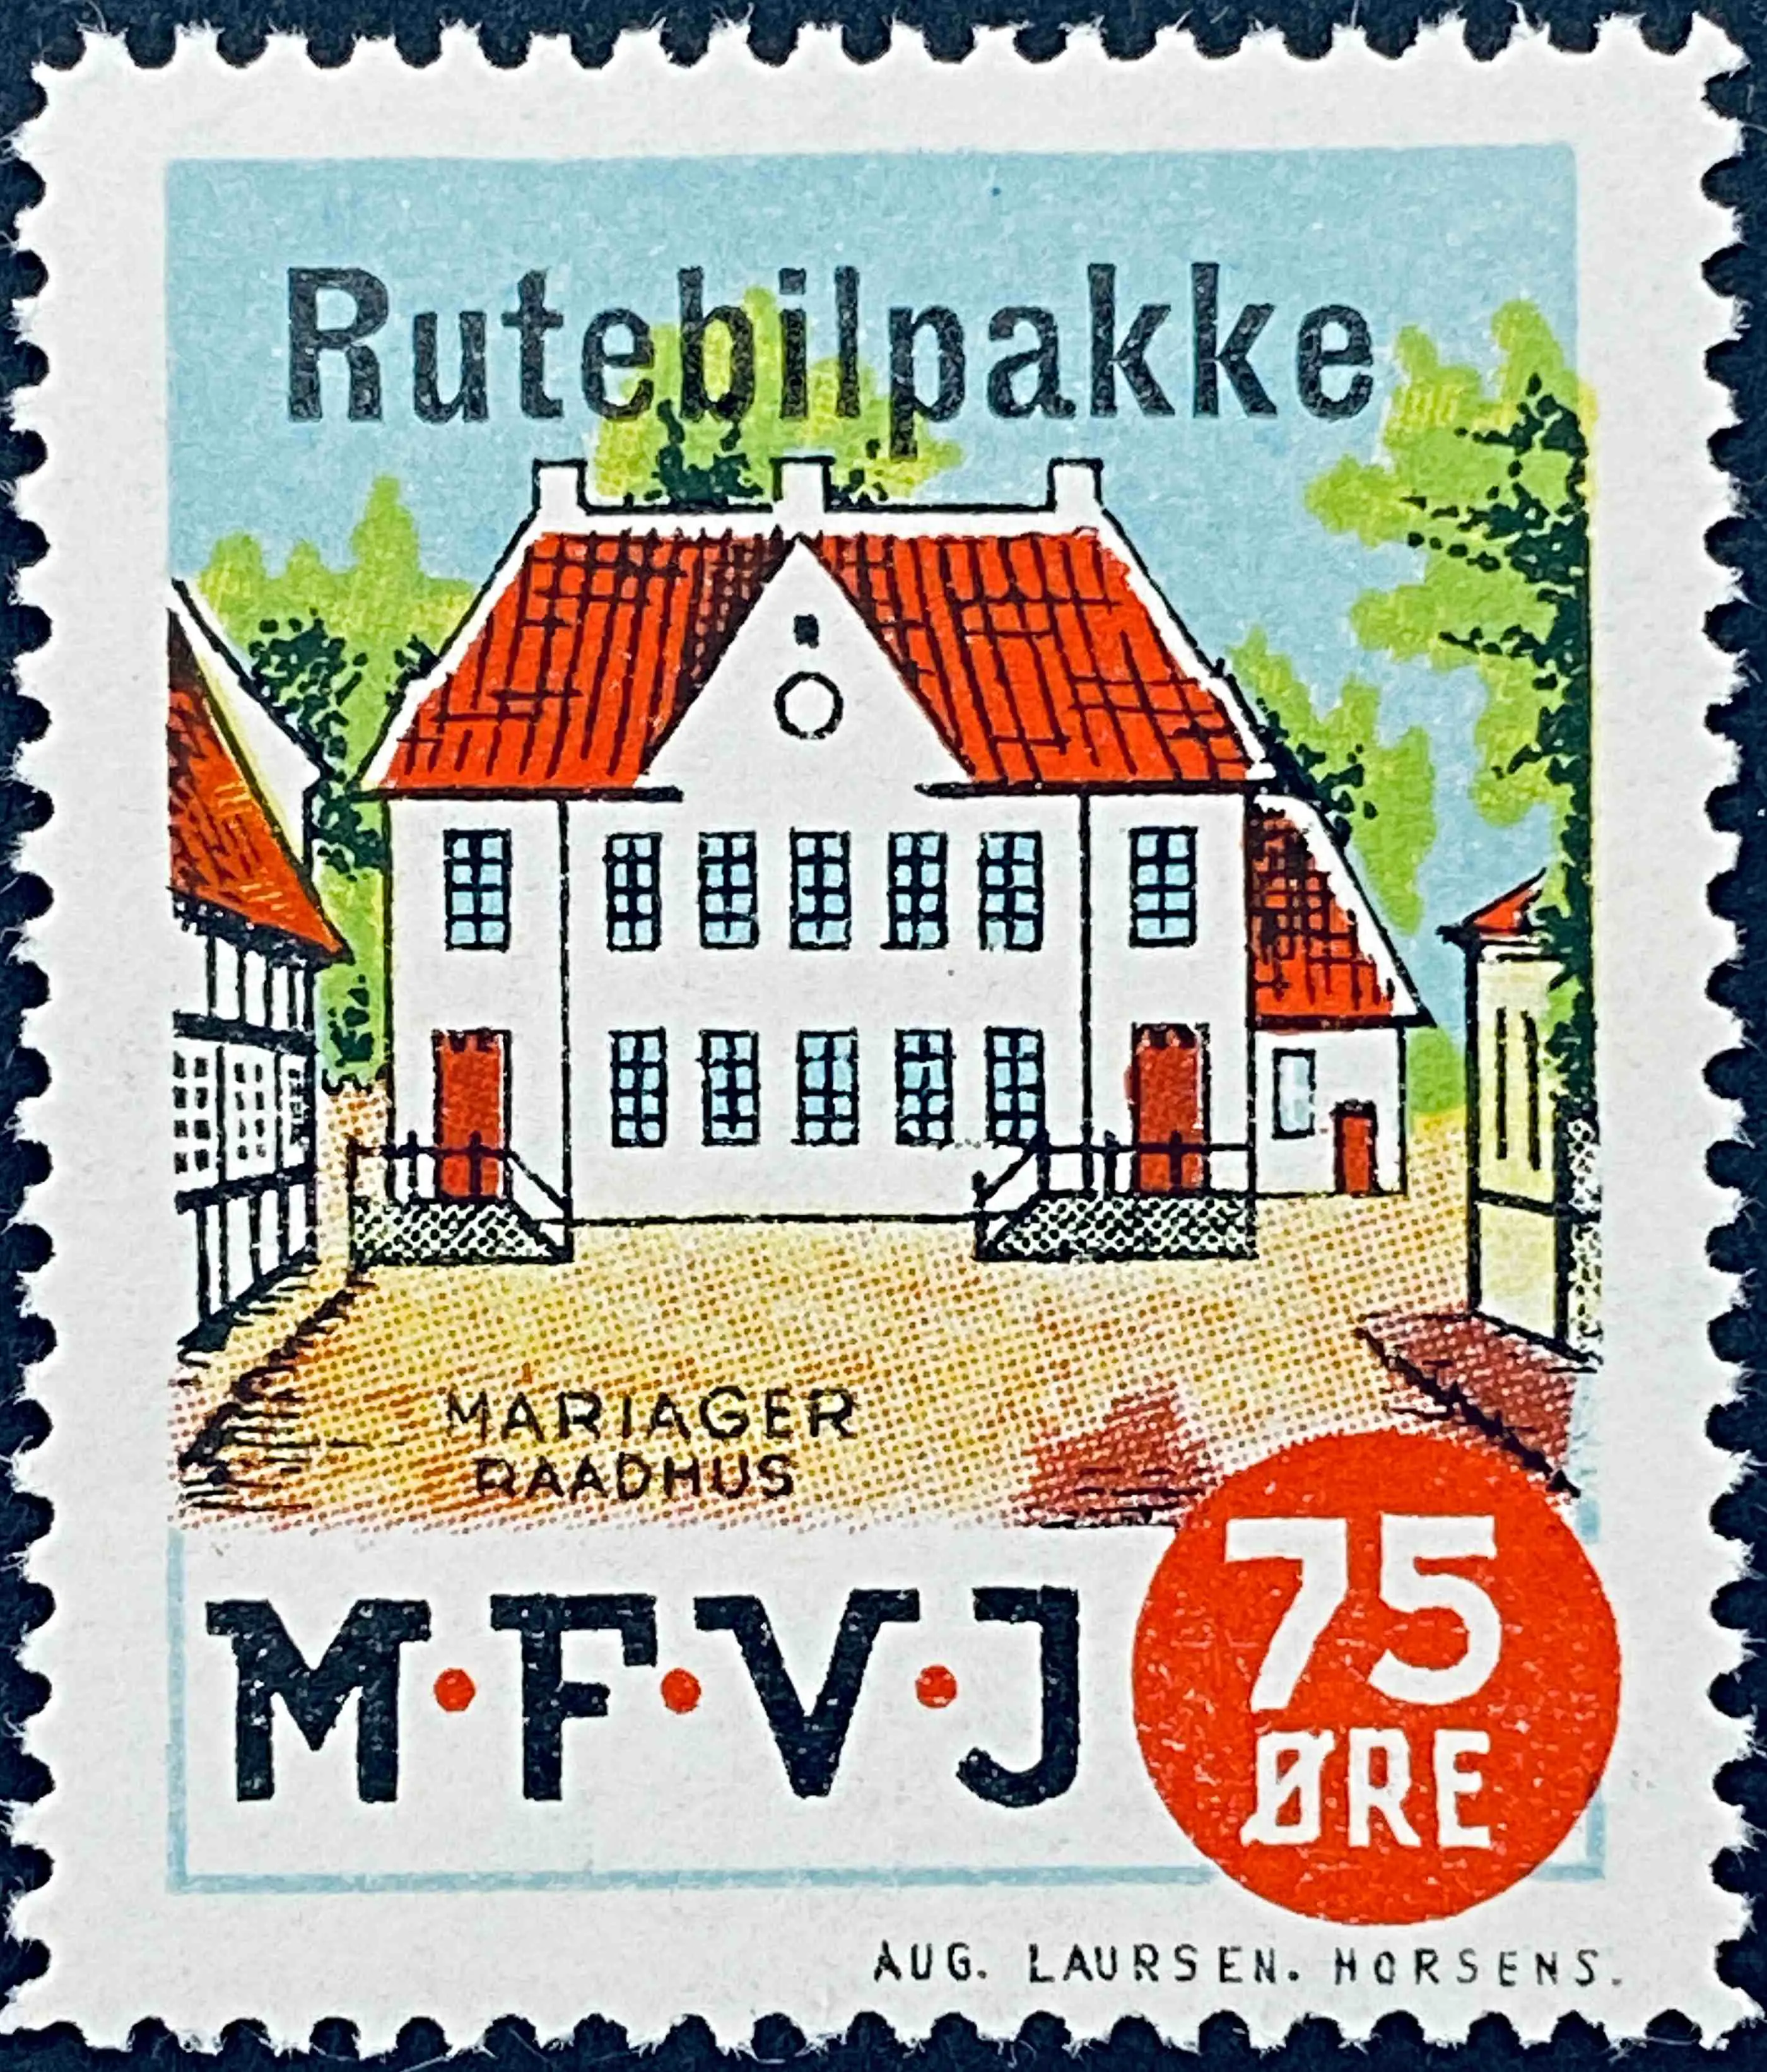 MFVJ R2 - Provisorium (overtryk) "Rutebilpakke" på 75 Øre Motiv: Mariager Rådhus - Flerfarvet - trykkeri: Aug. Laursen: Horsens.